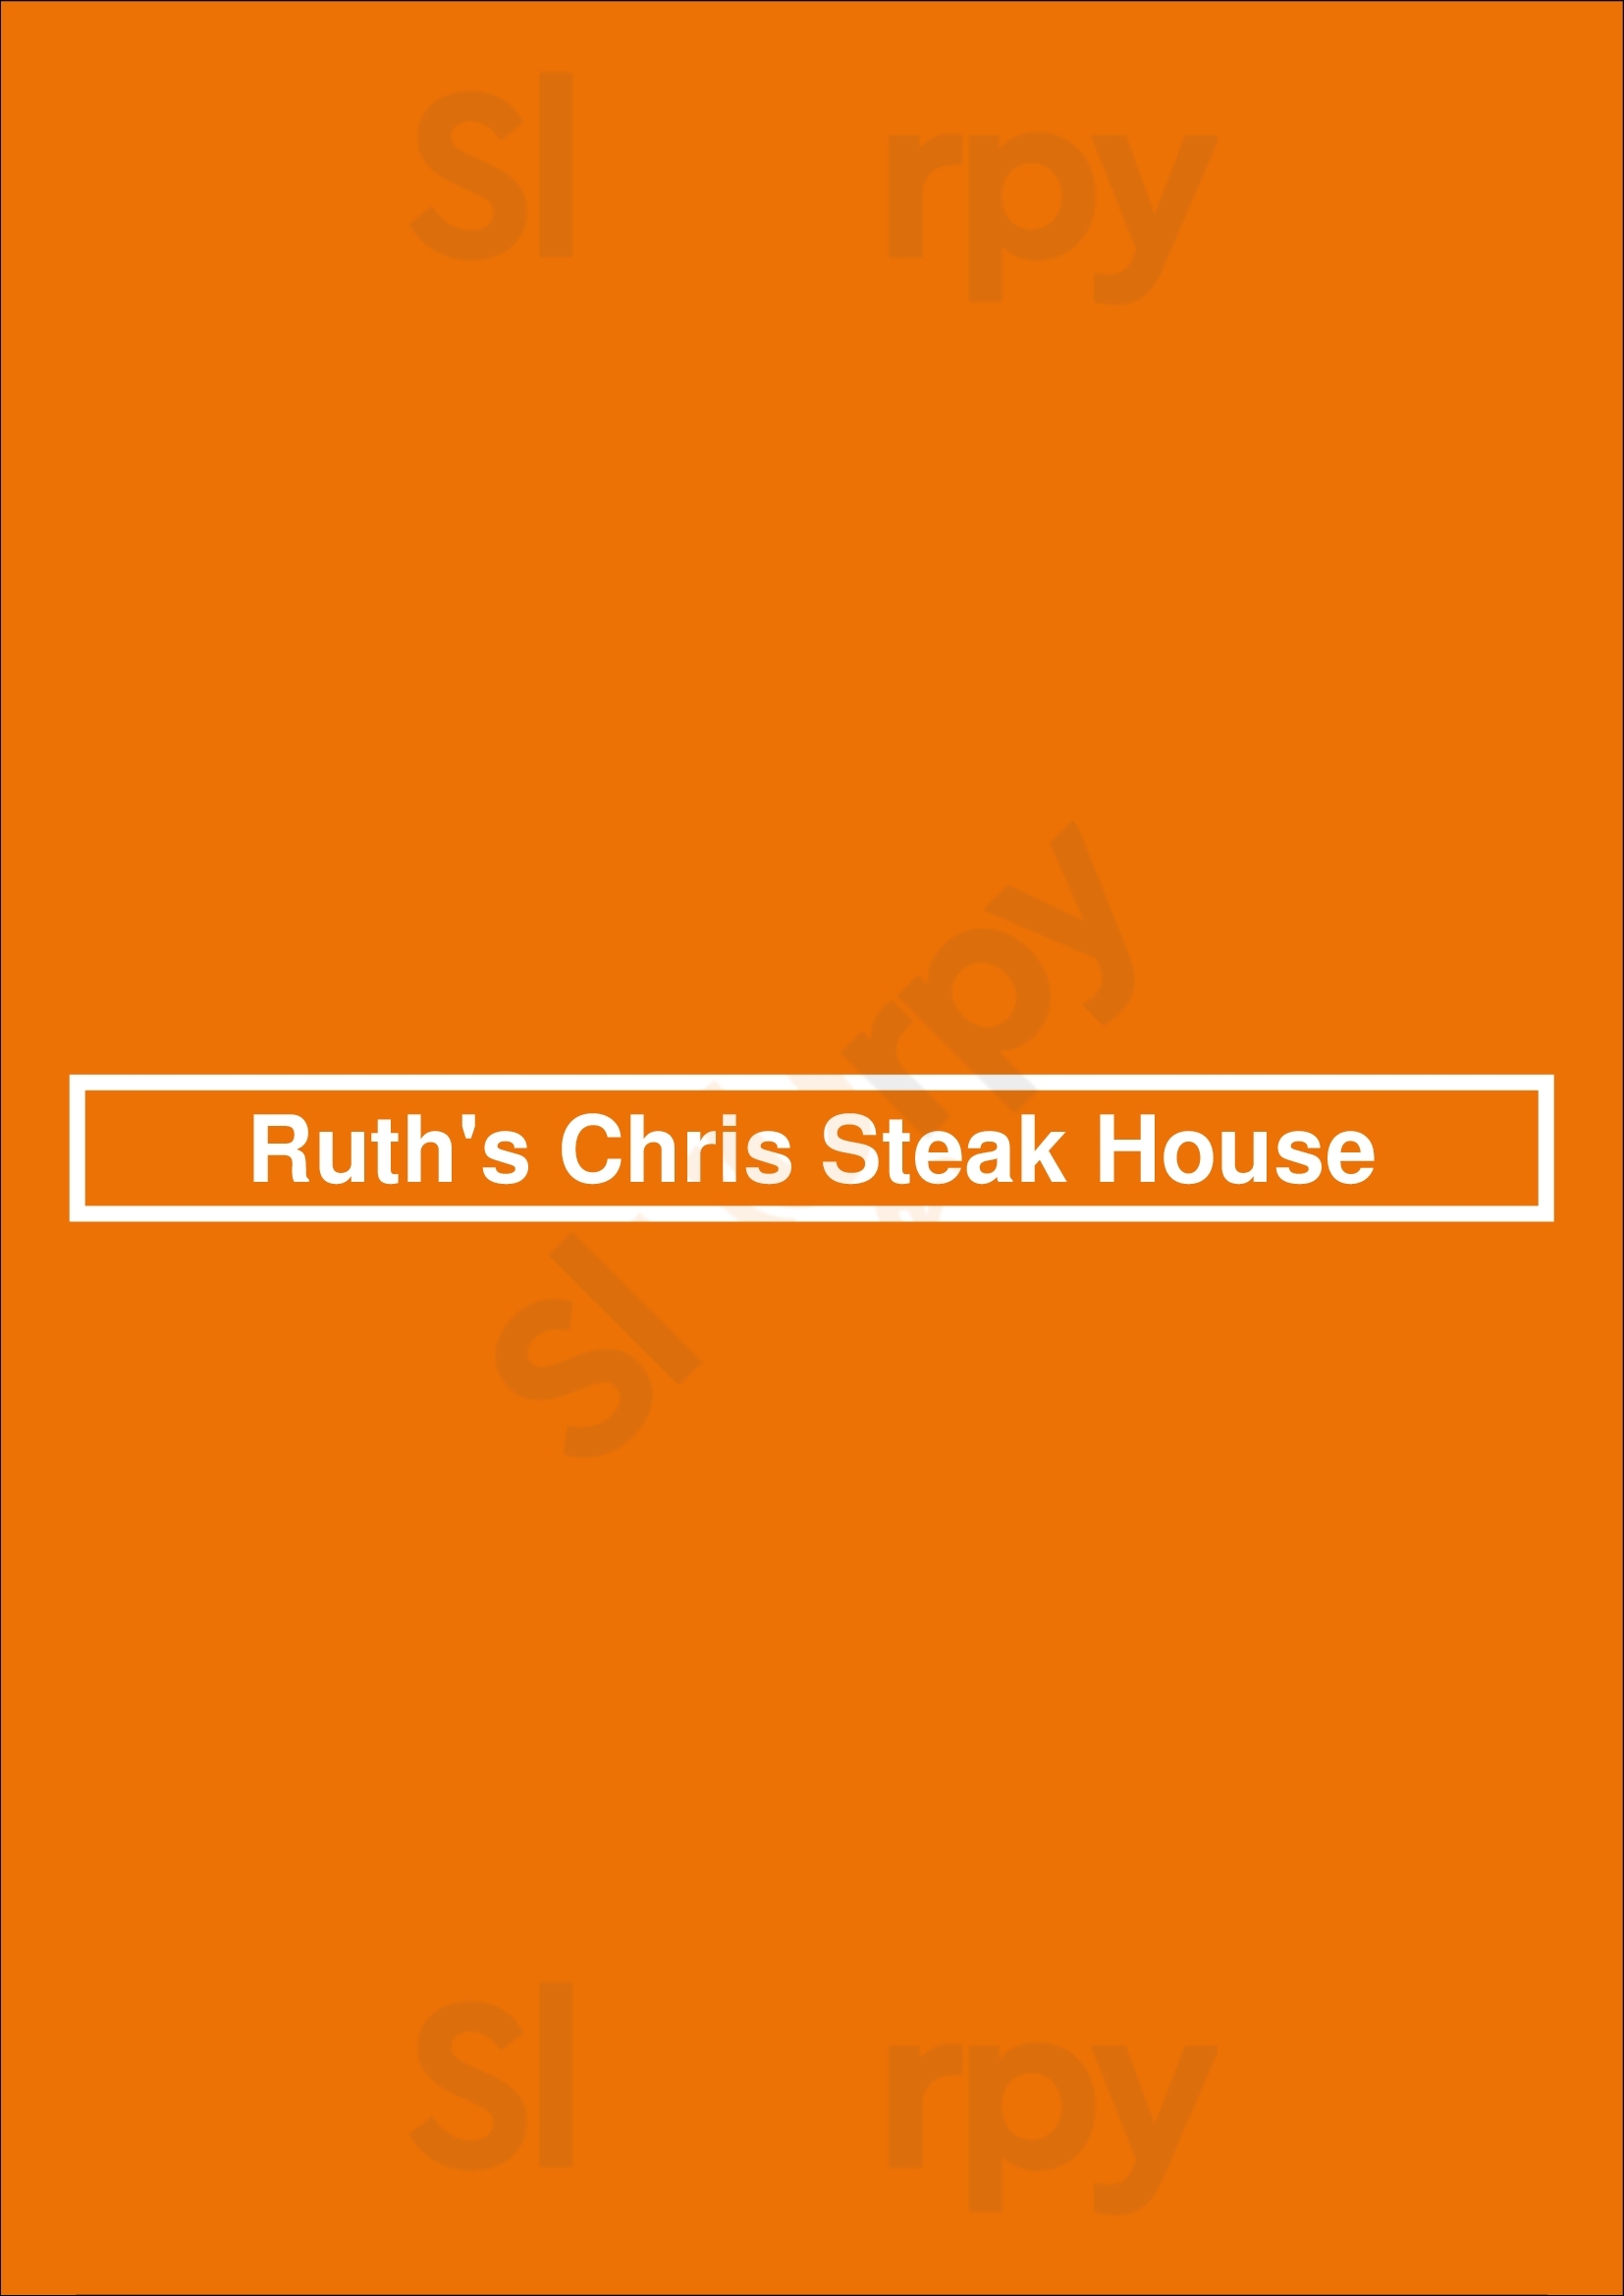 Ruth's Chris Steak House San Diego Menu - 1